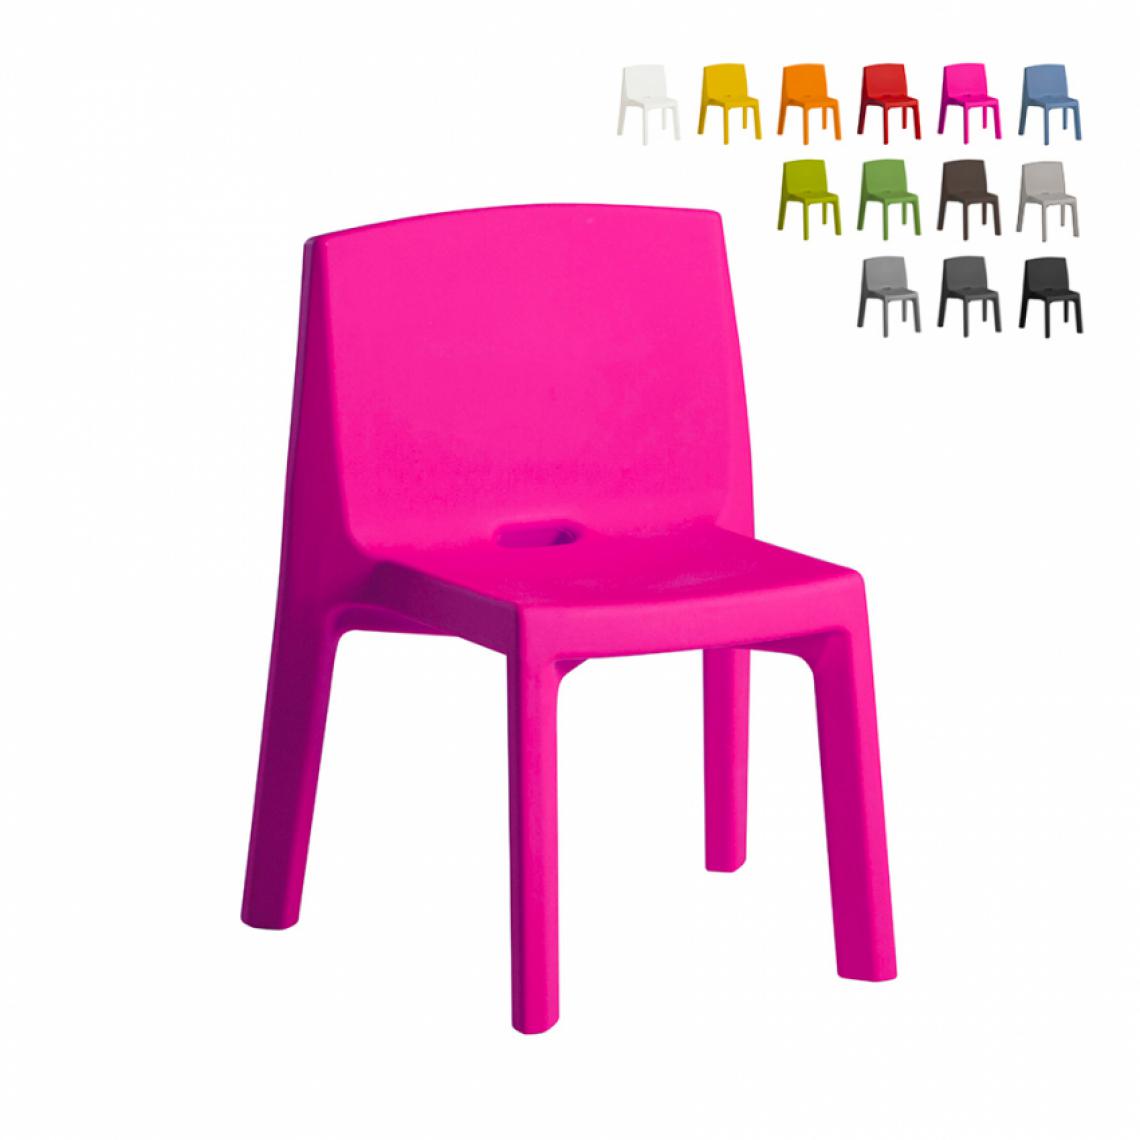 Slide - Chaise au design moderne Slide Q4 pour la maison et le jardin, Couleur: Fucsia - Chaises